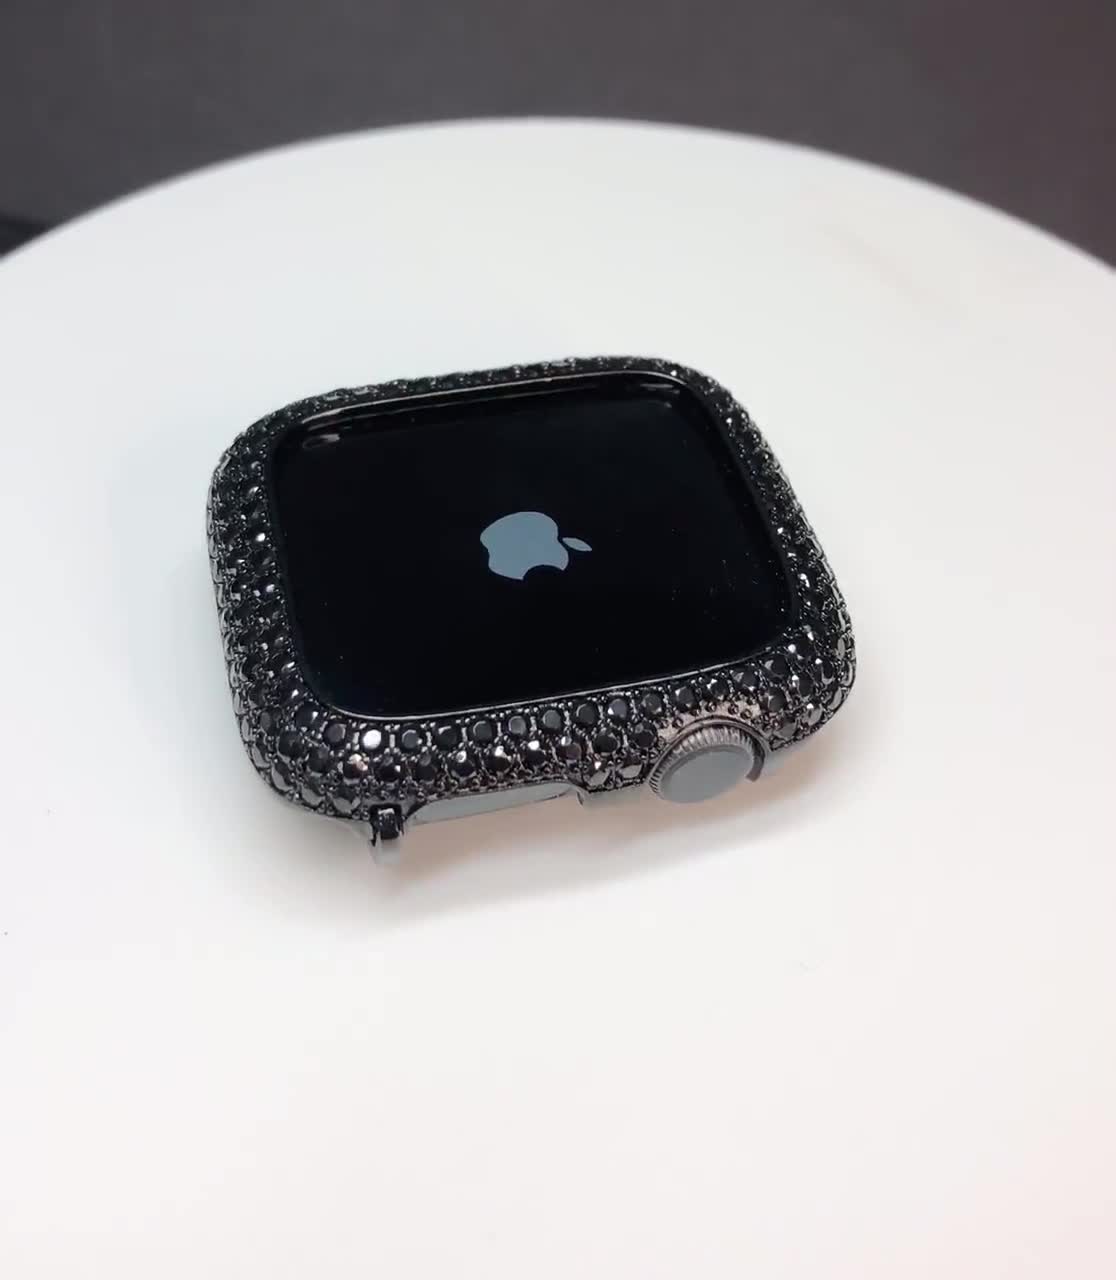 40 mm Apple watch bling lab Diamond Apple Watch case +Apple watch